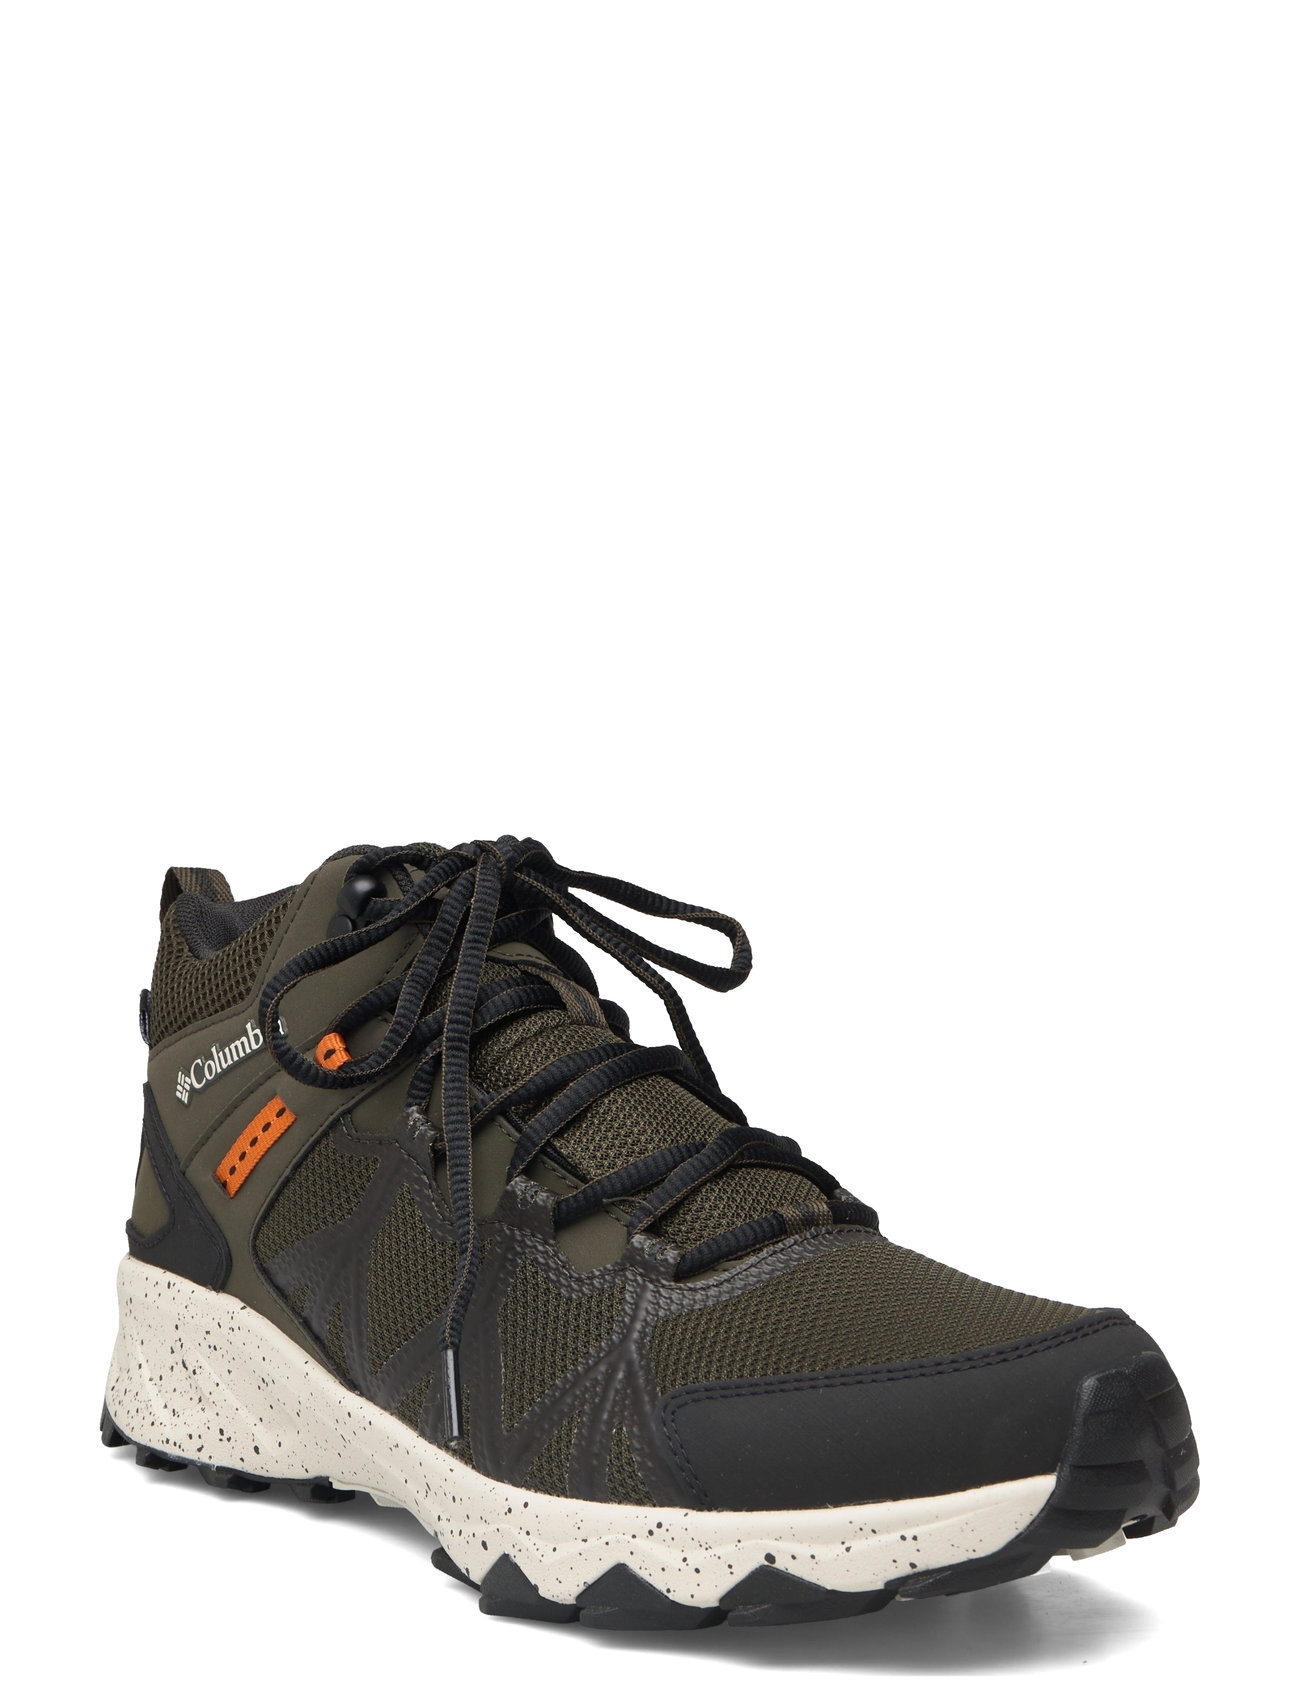 Peakfreak Ii Mid Outdry Sport Sport Shoes Sport Outdoor-hiking Shoes Khaki Green Columbia Sportswear